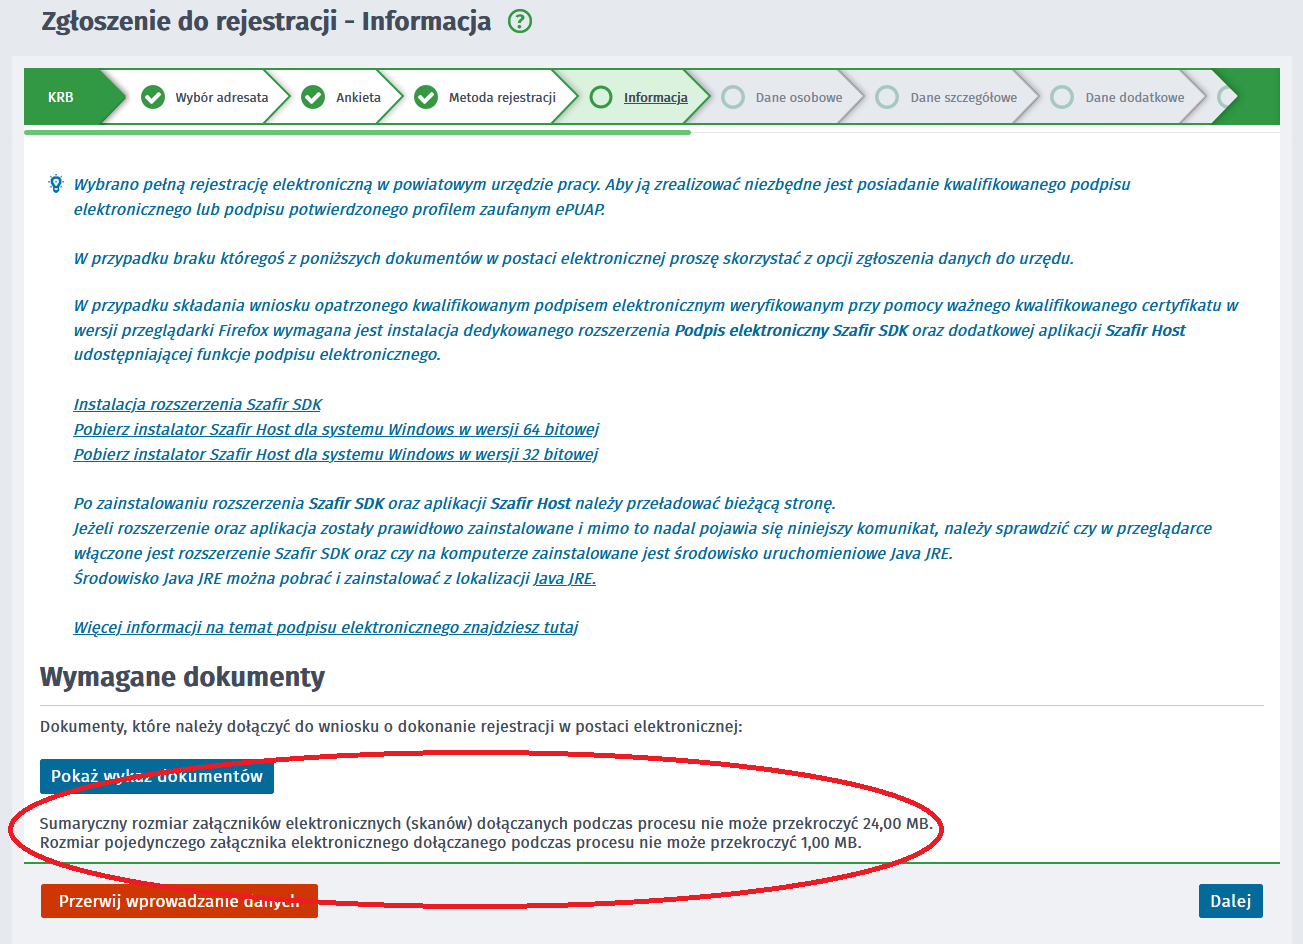 zrzut ekranu obraz przedstawia Zgłoszenie do rejestracji - Informacja wykaz dokumentów